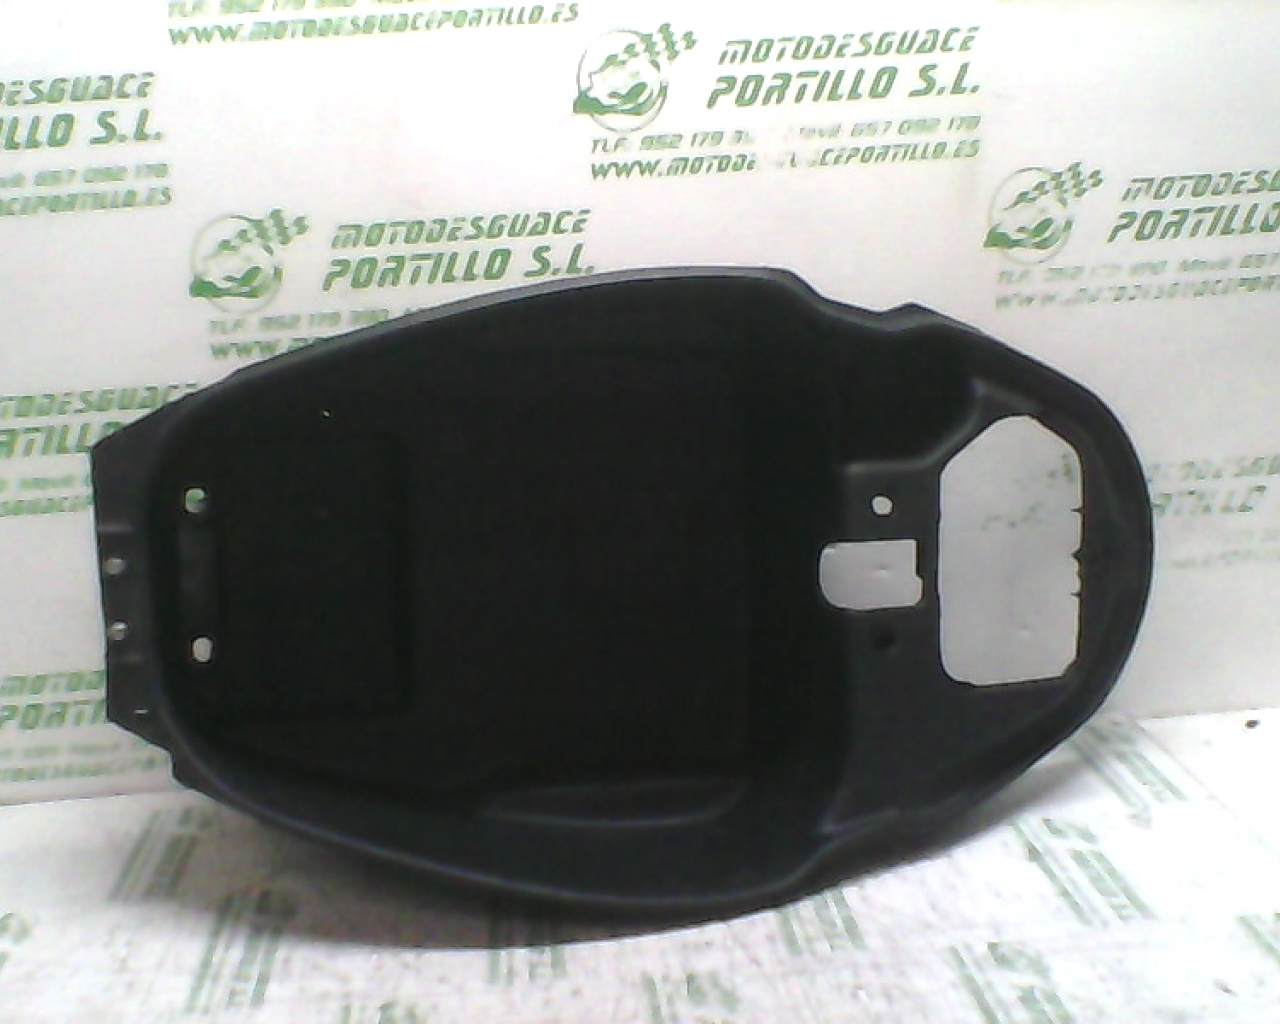 Porta-casco MTR MALLORCA 125 (2009-2008)